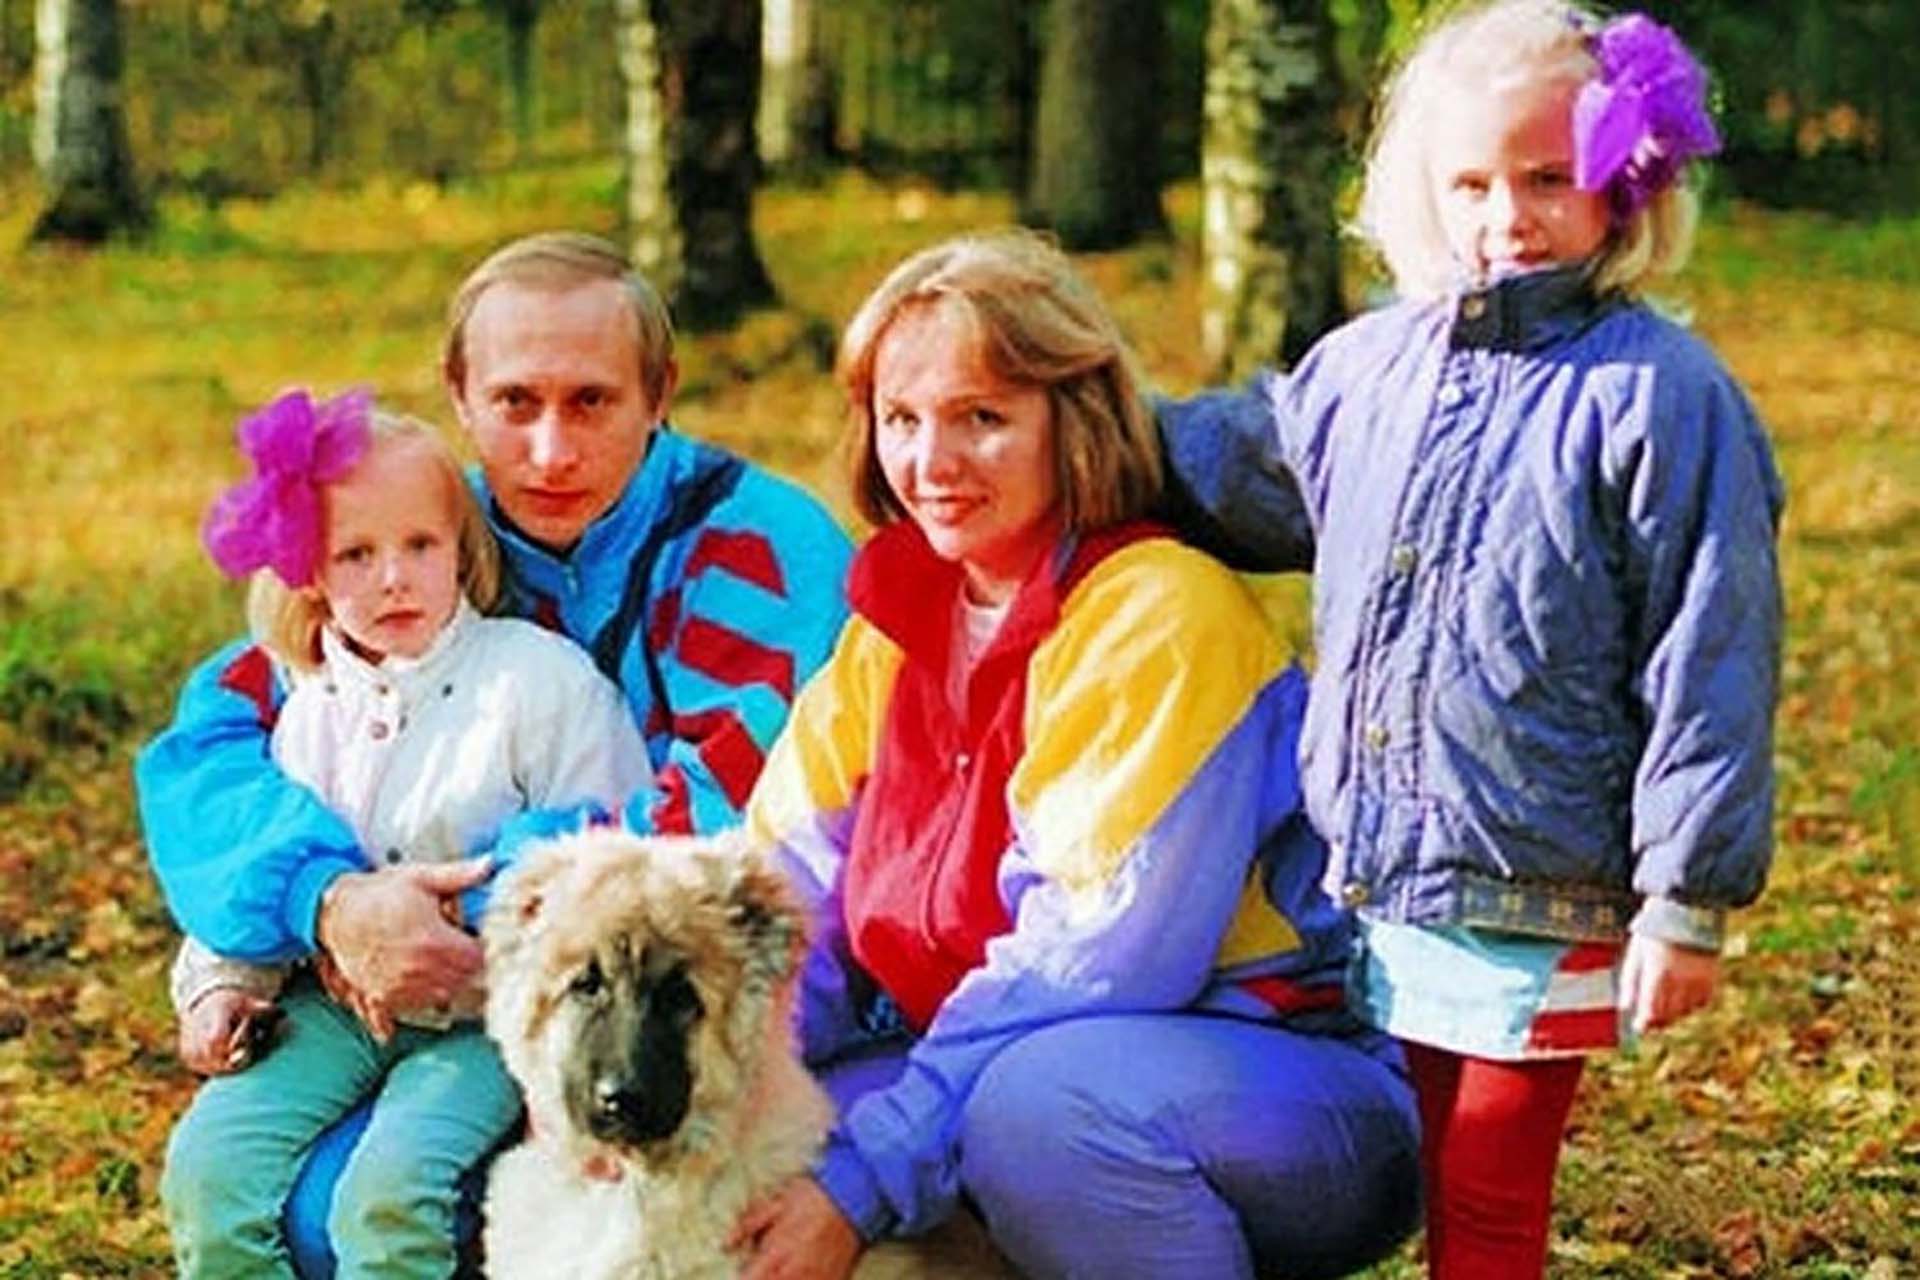 Vladimir Putin con su ex esposa, Ludmila, y sus hijas, Masha y Katia, la más pequeña, que nació en la RDA mientras él estaba en misión del KGB en Dresde. (Russian Archives/Zuma Wire/Shutterstock)
